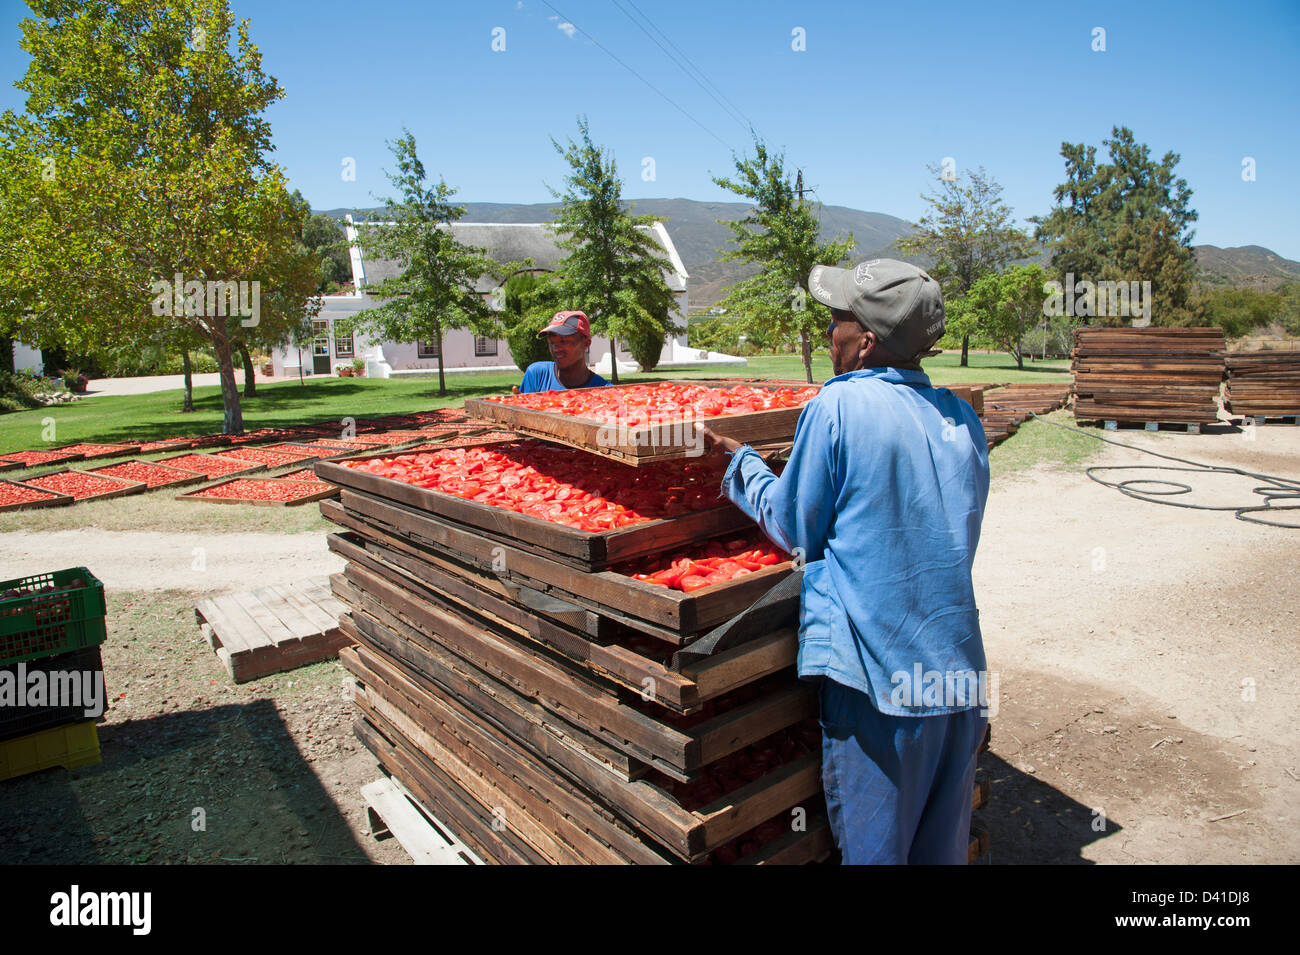 Arbeiter bereiten frisch geerntete Tomaten zum Trocknen in der Sonne. Getrocknete Früchte Industrie Stapeln Tabletts beladen mit Tomaten Stockfoto